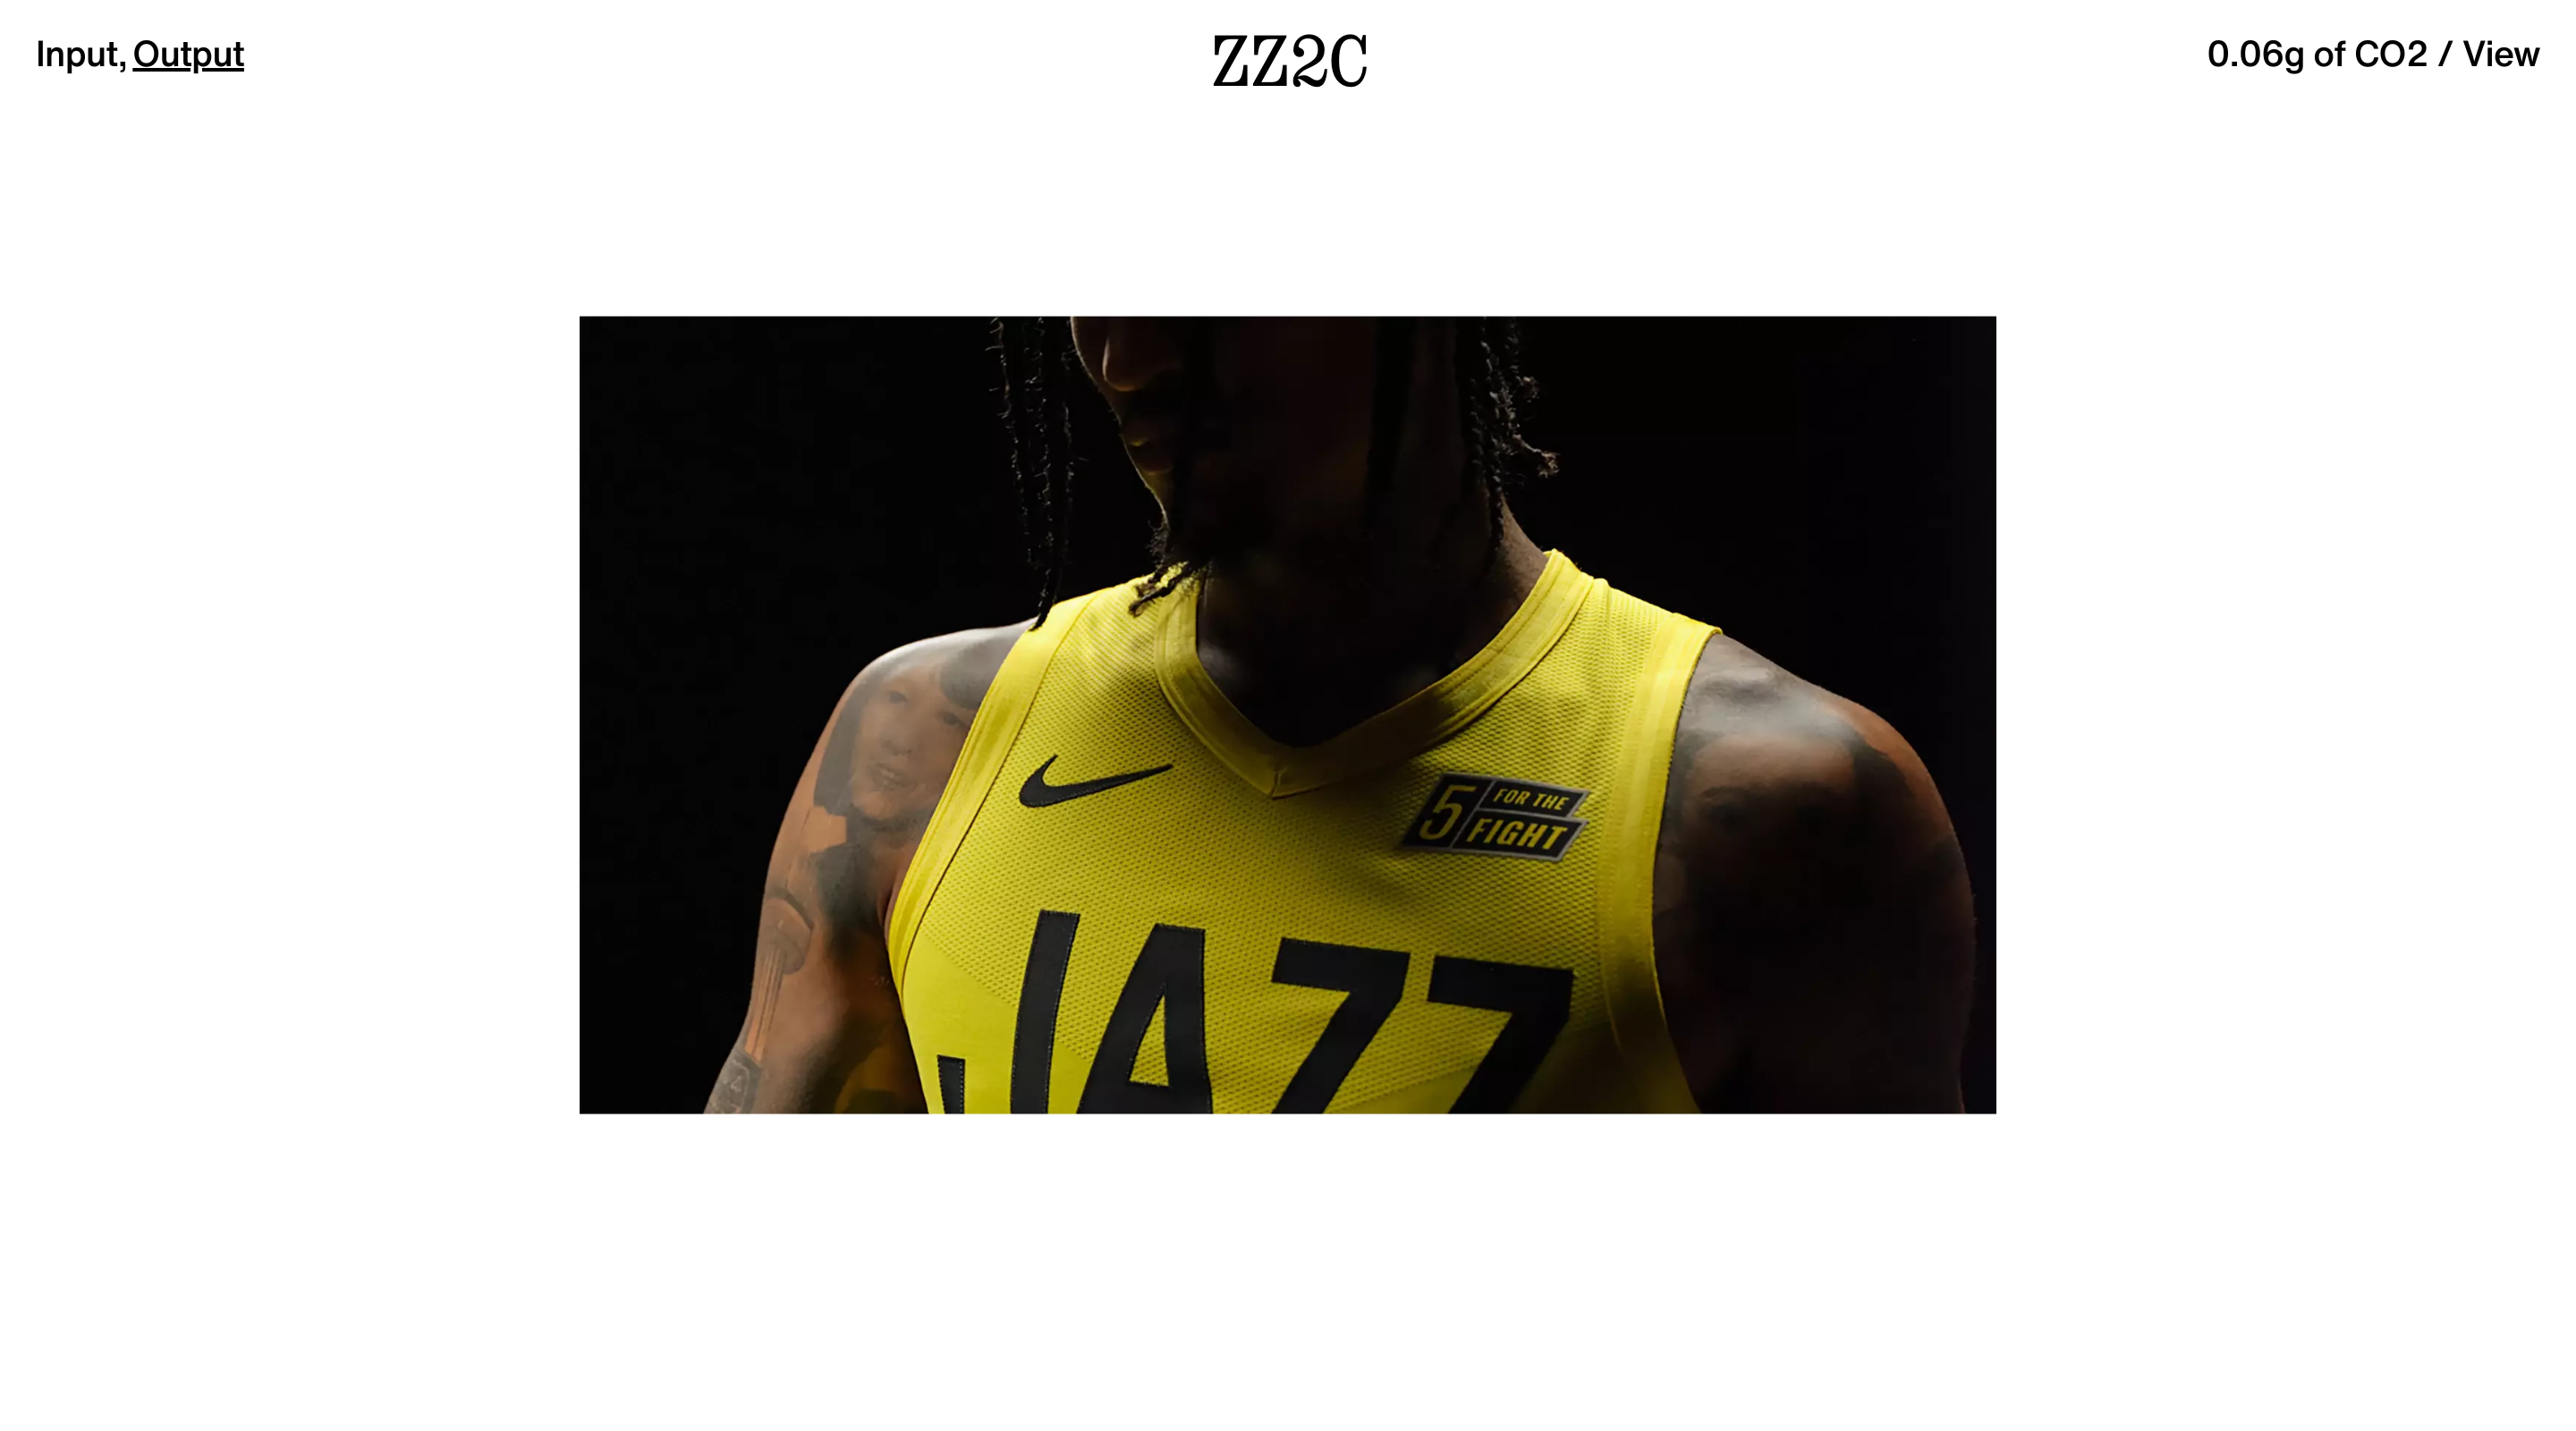 ZZ2C website